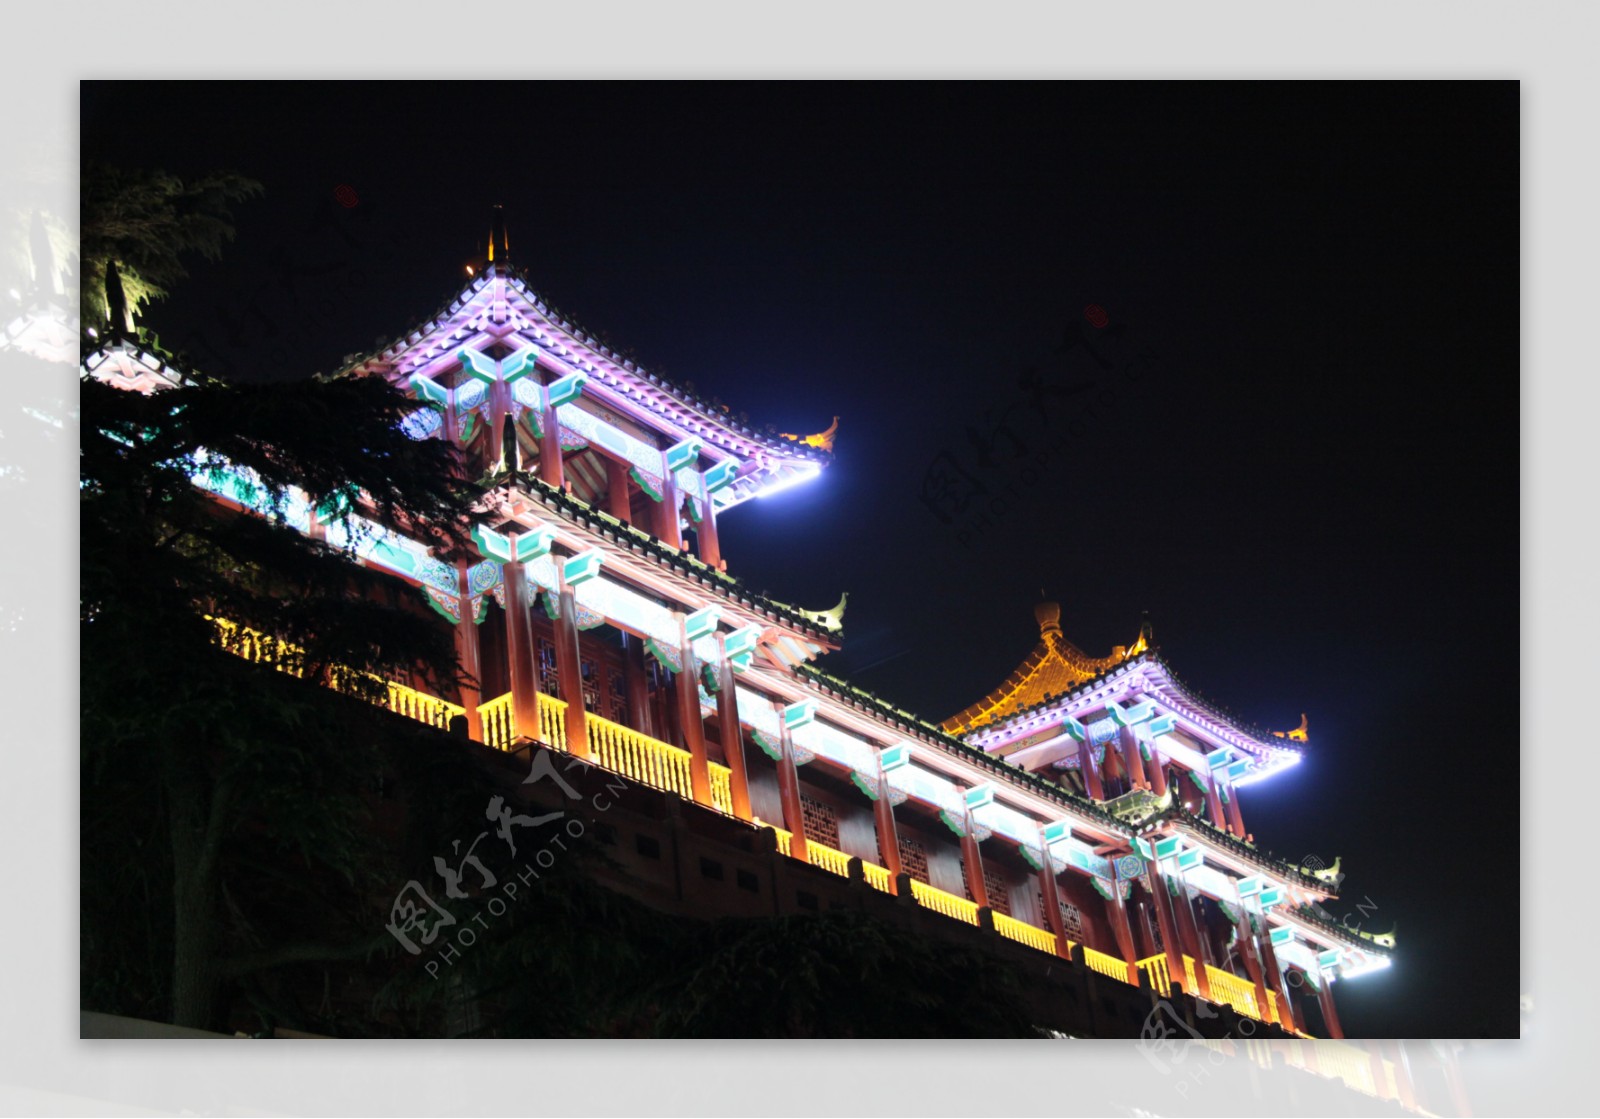 南京玄武湖LED照明亮化工程